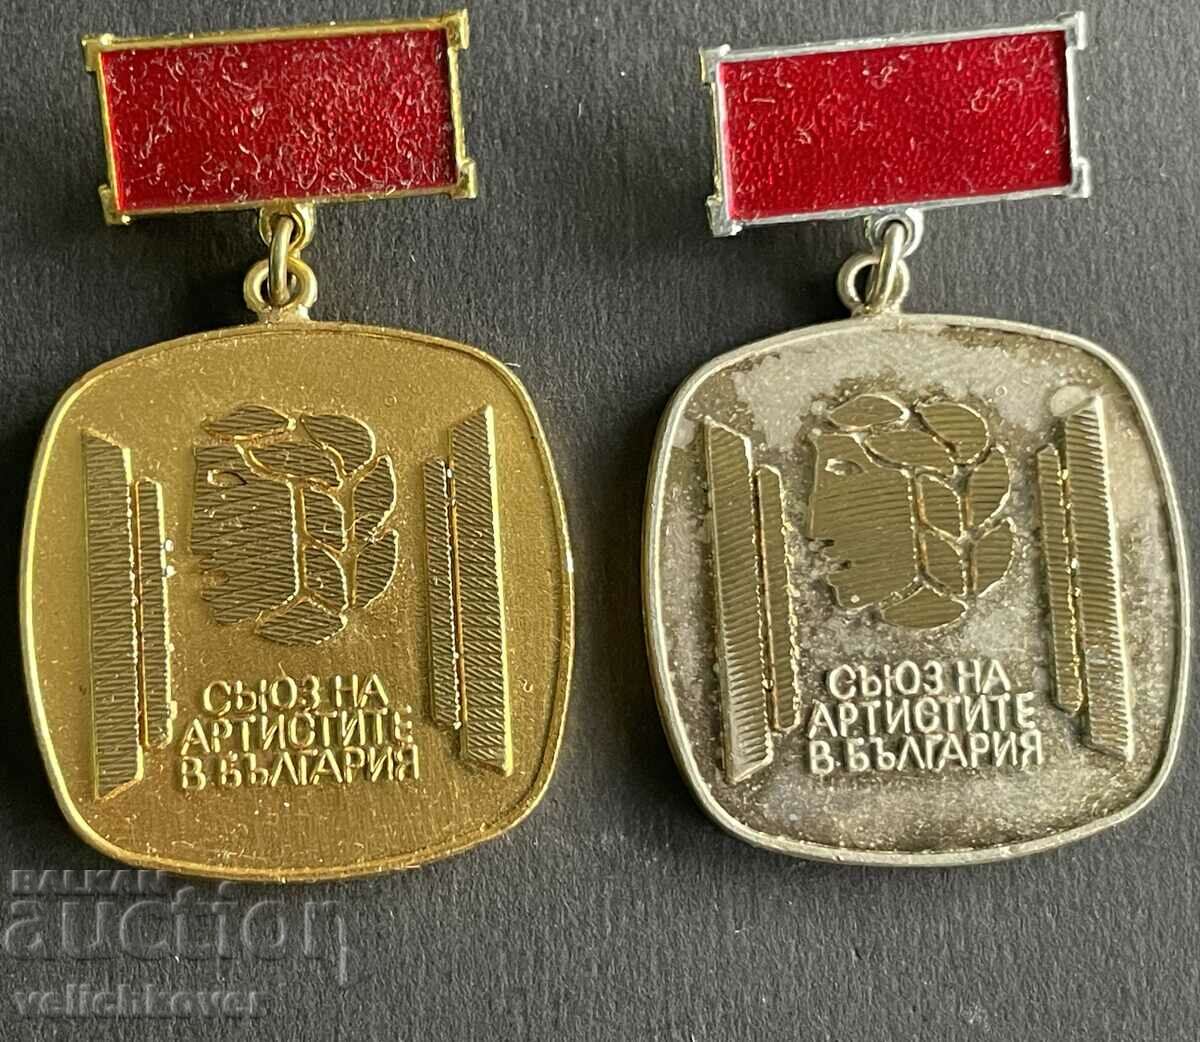 35914 Βουλγαρία δύο μετάλλια Ένωση Καλλιτεχνών στη Βουλγαρία